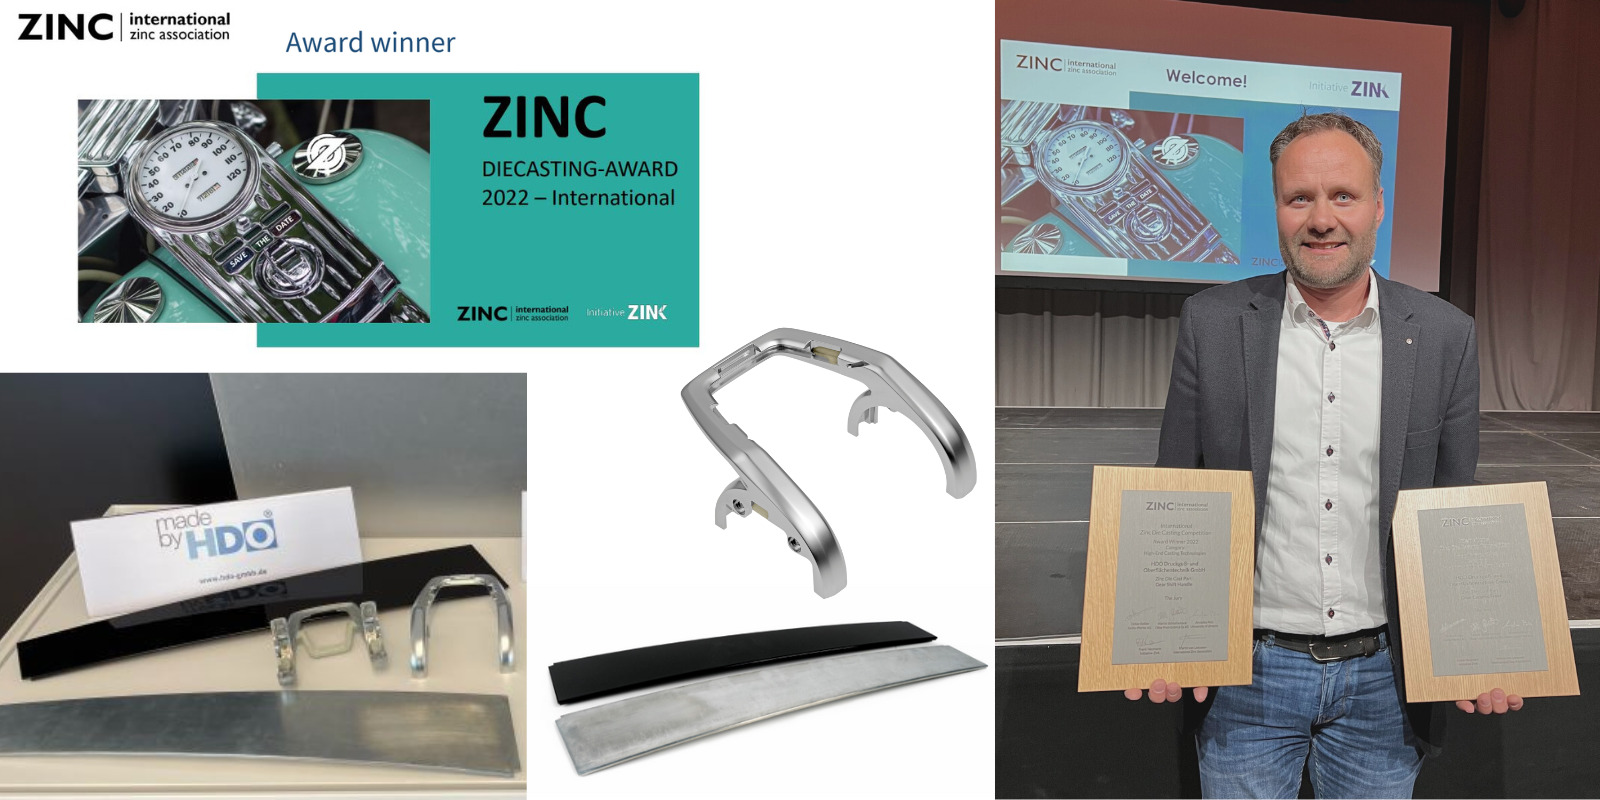 HDO gewinnt zwei Auszeichnungen beim Internationalen Zinc Die Casting Award 2022